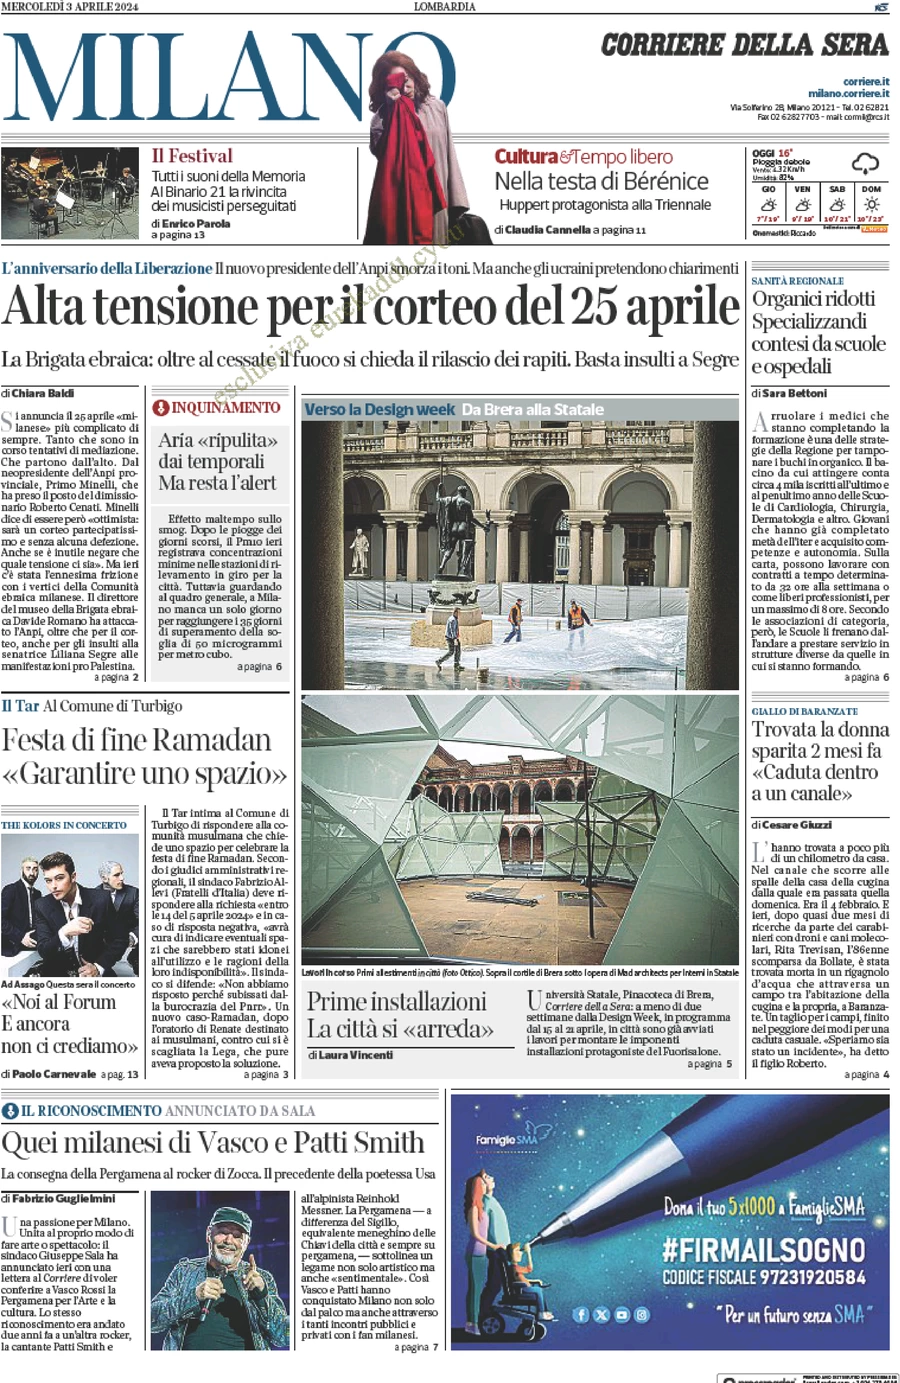 anteprima della prima pagina di corriere-della-sera-milano del 03/04/2024